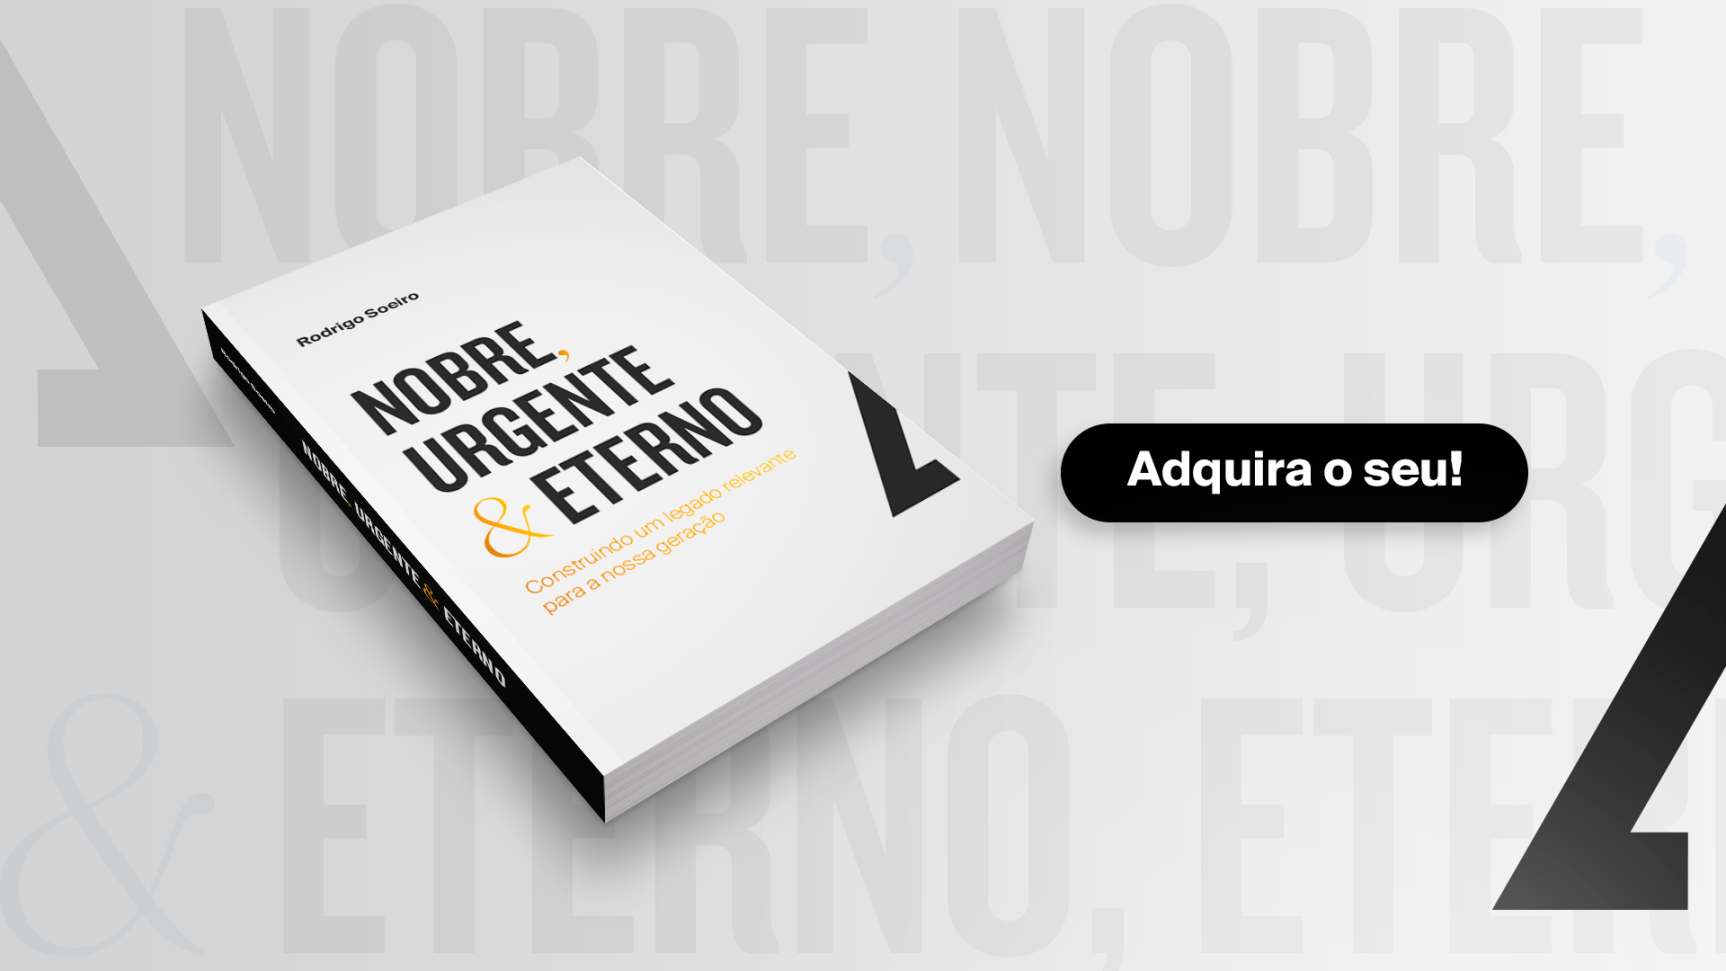 Livro Rodrigo Soeiro Nobre, Urgente e Eterno